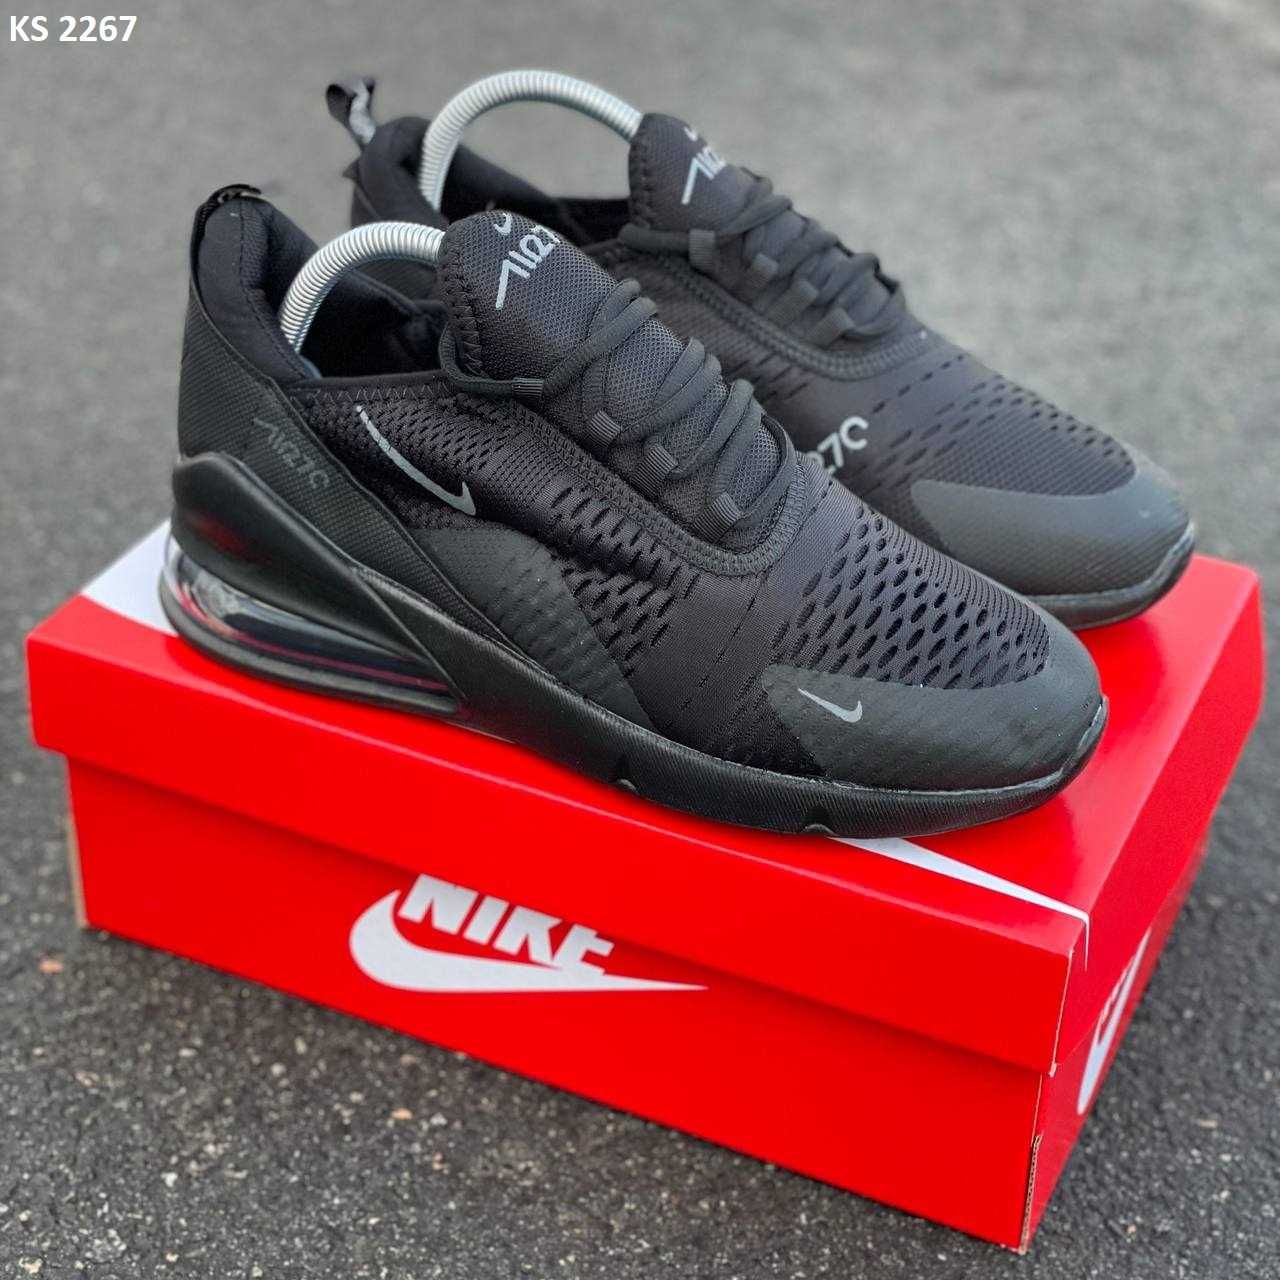 Чоловічі кросівки/взуття Nike Air Max 270! Артикул: KS 2267